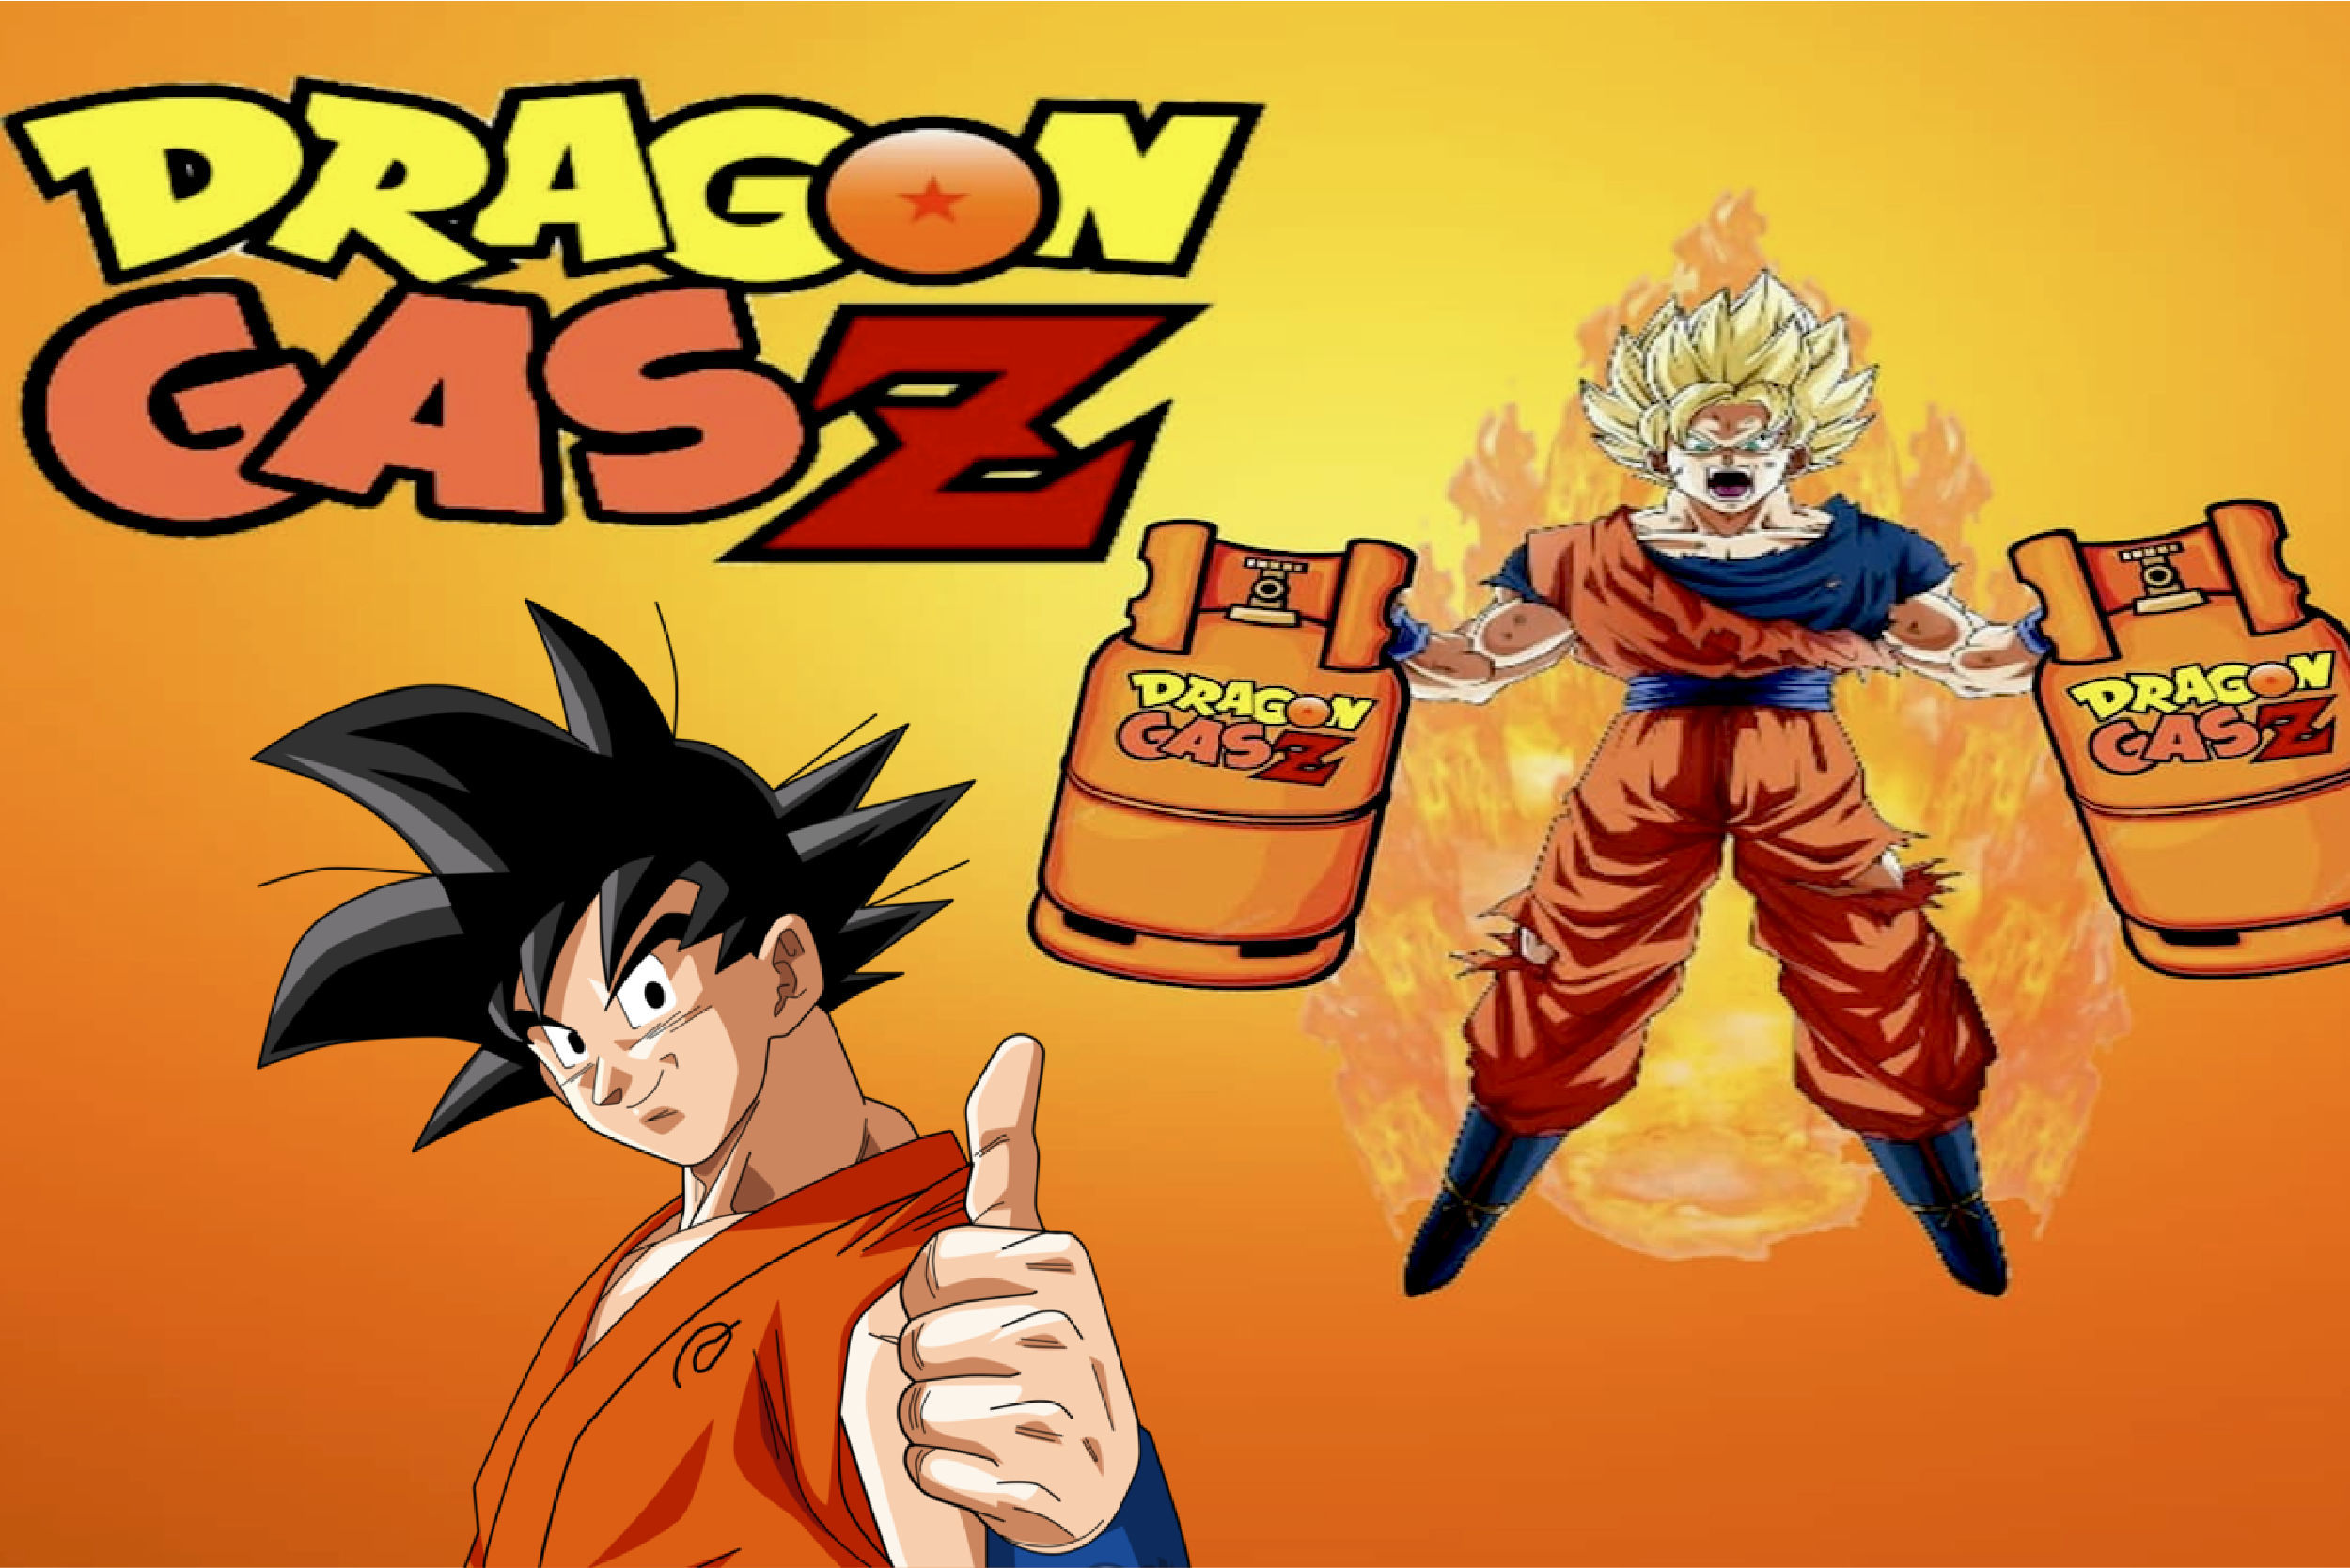 Dragon Gas Z, el nuevo emprendimiento chileno otaku que es toda una sensación en redes